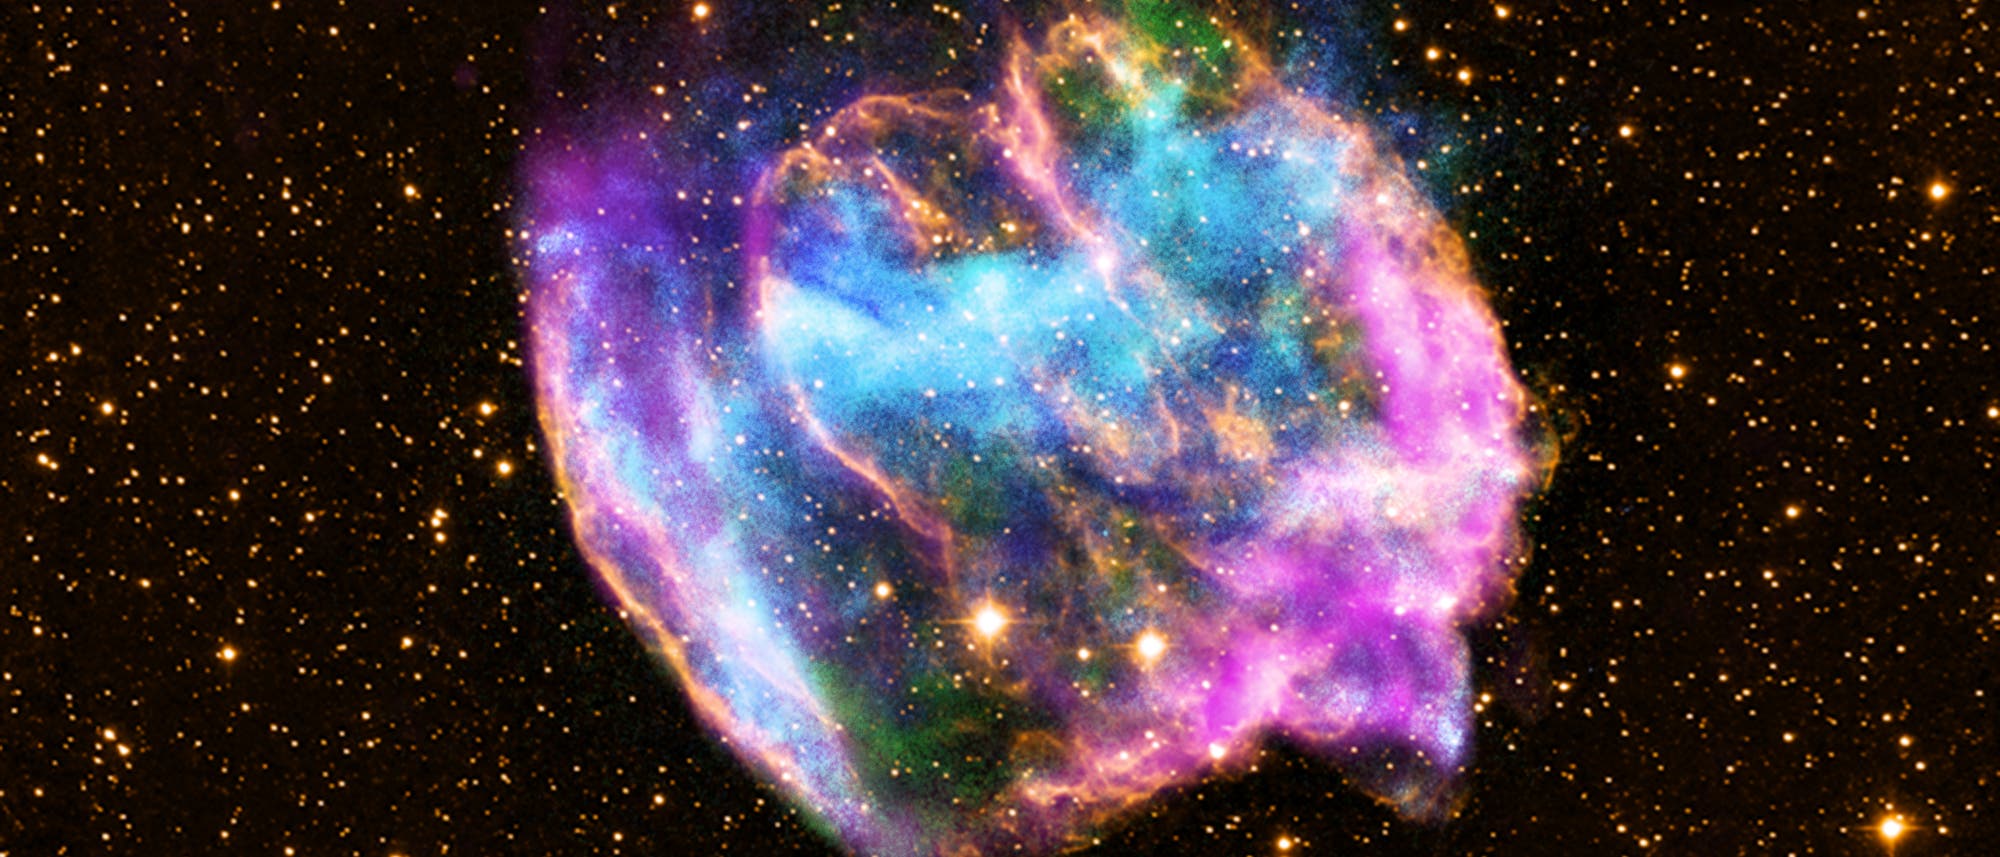 Der Supernova-Überrest W49B im Sternbild Adler